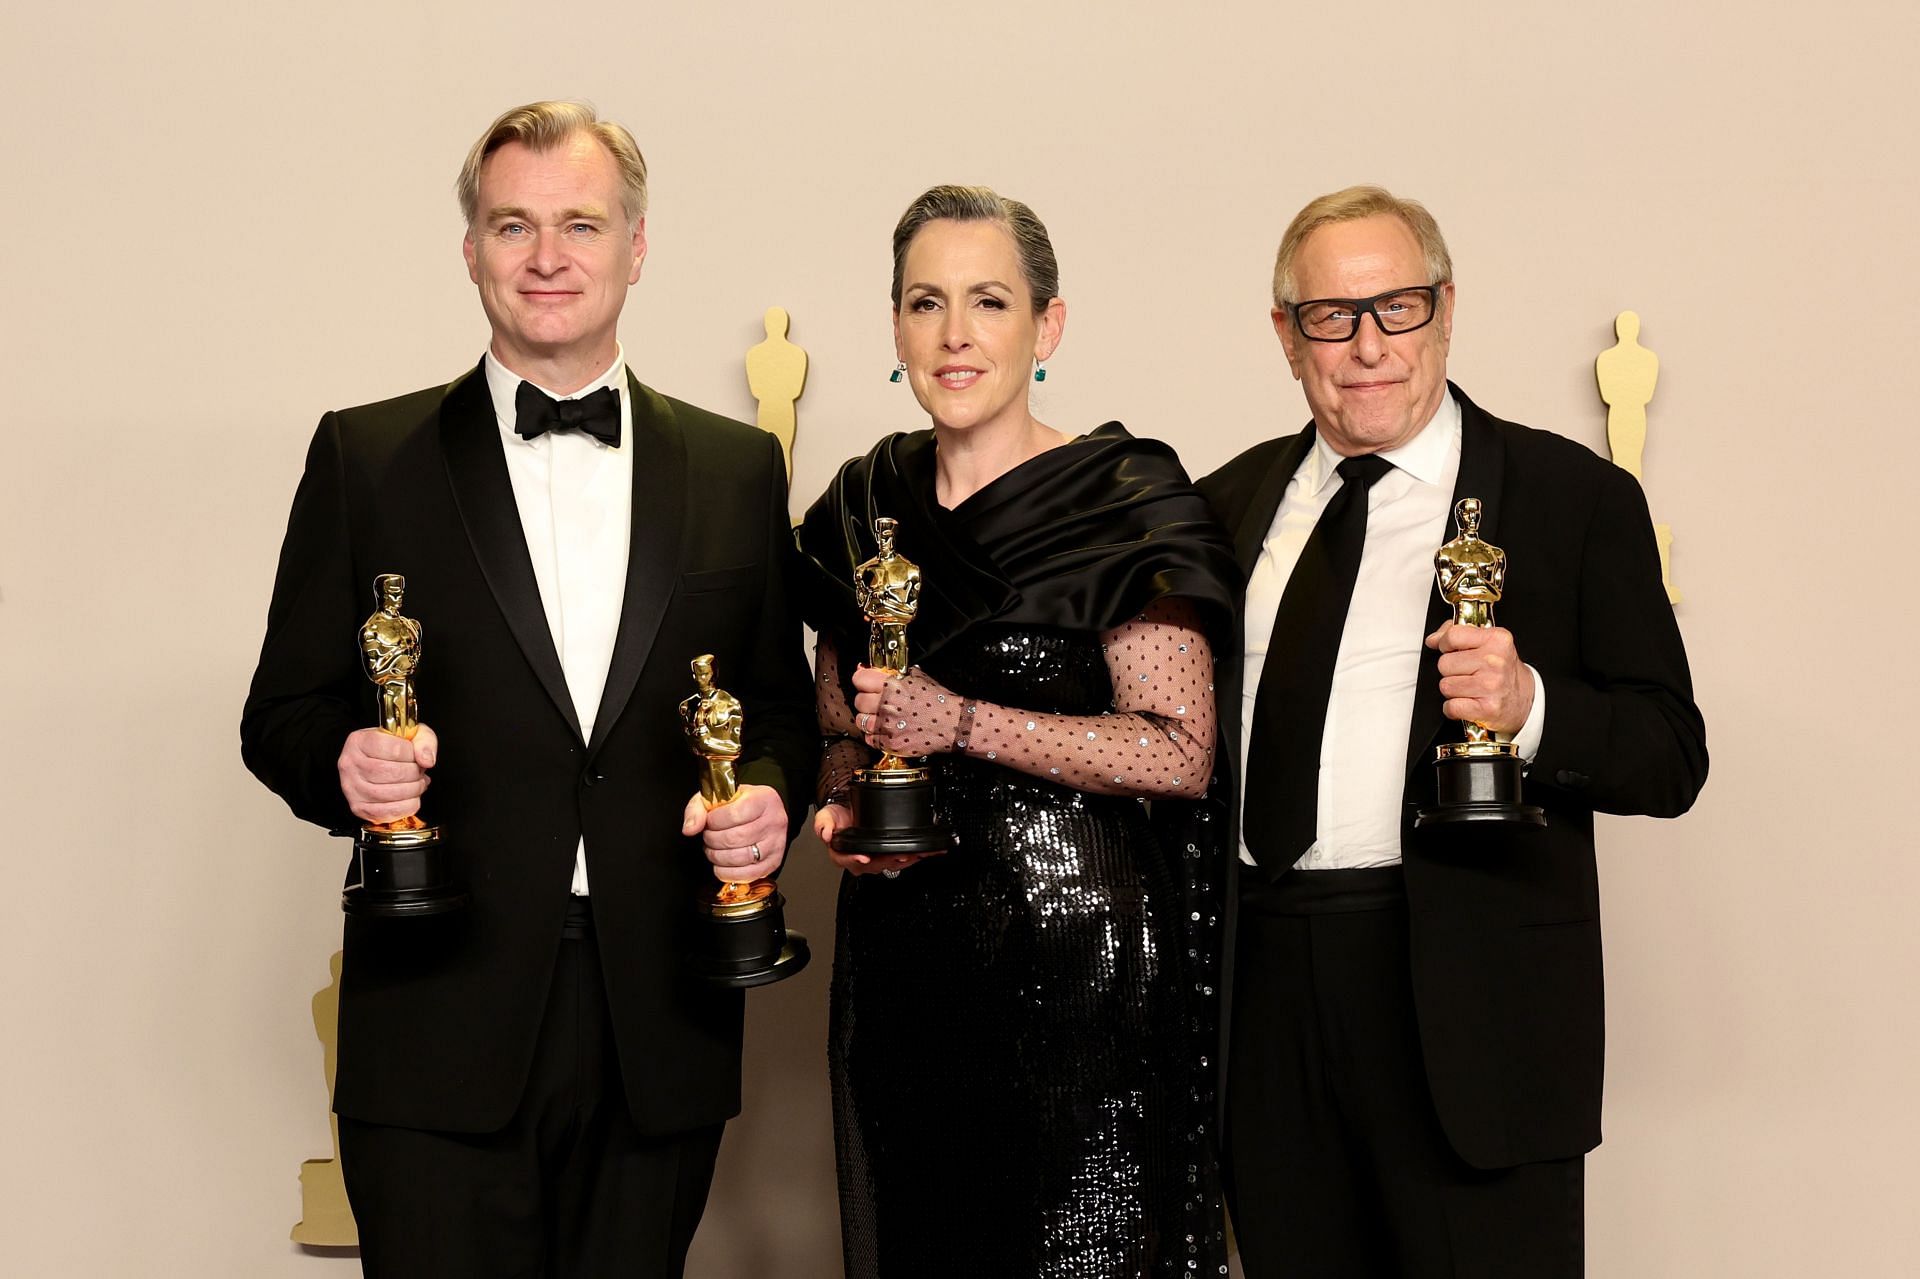 96th Annual Academy Awards - Press Room (via Getty/Arturo Holmes)